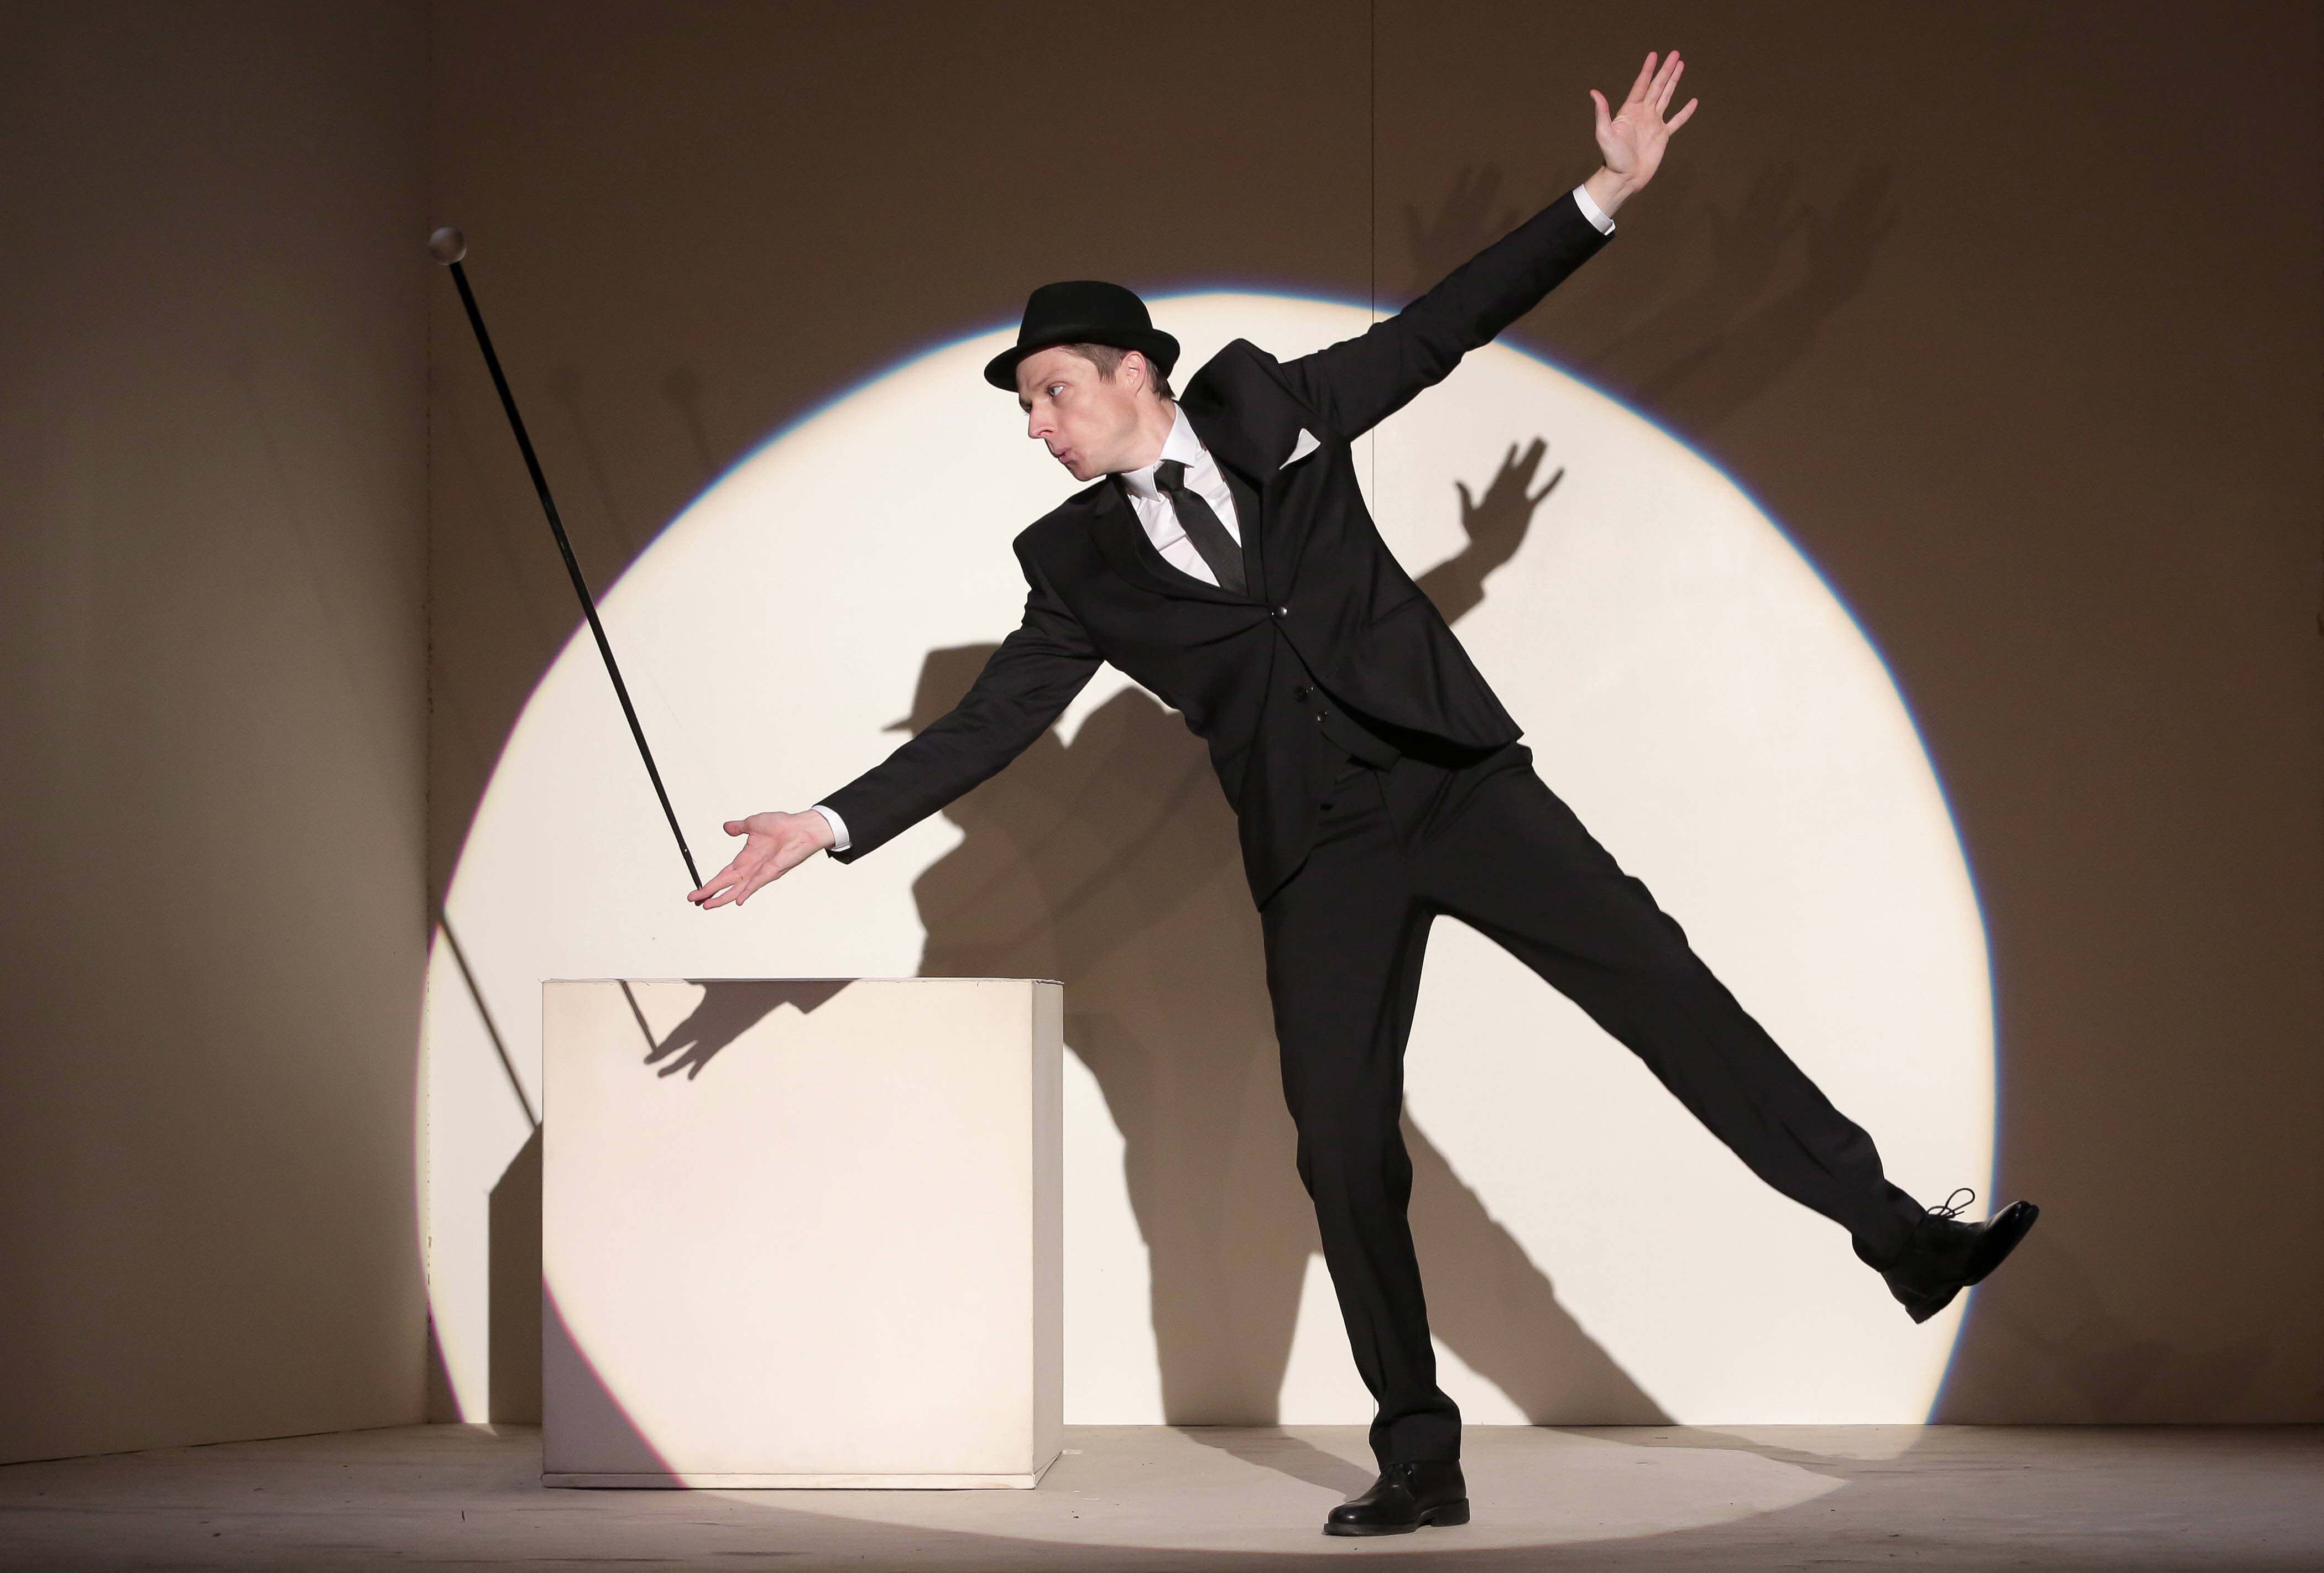 Un homme vêtu d'un costard noir, chemise blanche, cravate et chapeau noir est en équilibre sur une jambe, penché sur le coté bras écartés. Sur le bout de ses doigts une canne tient en équilibre. Il se tient au milieu d'un cercle de lumière blanche.